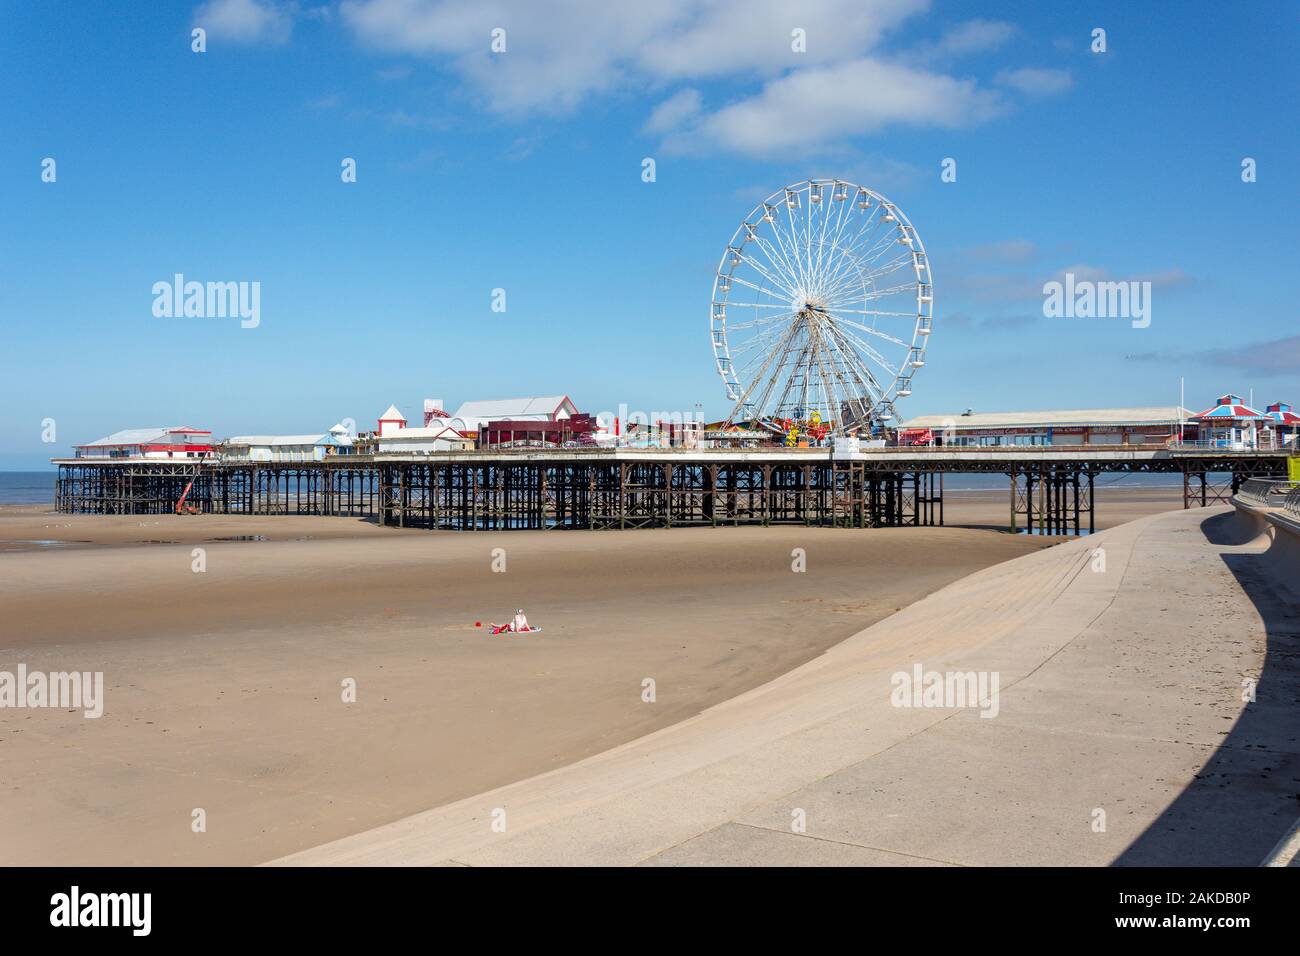 Promenade de la plage et Central Pier, Blackpool, Lancashire, Angleterre, Royaume-Uni Banque D'Images